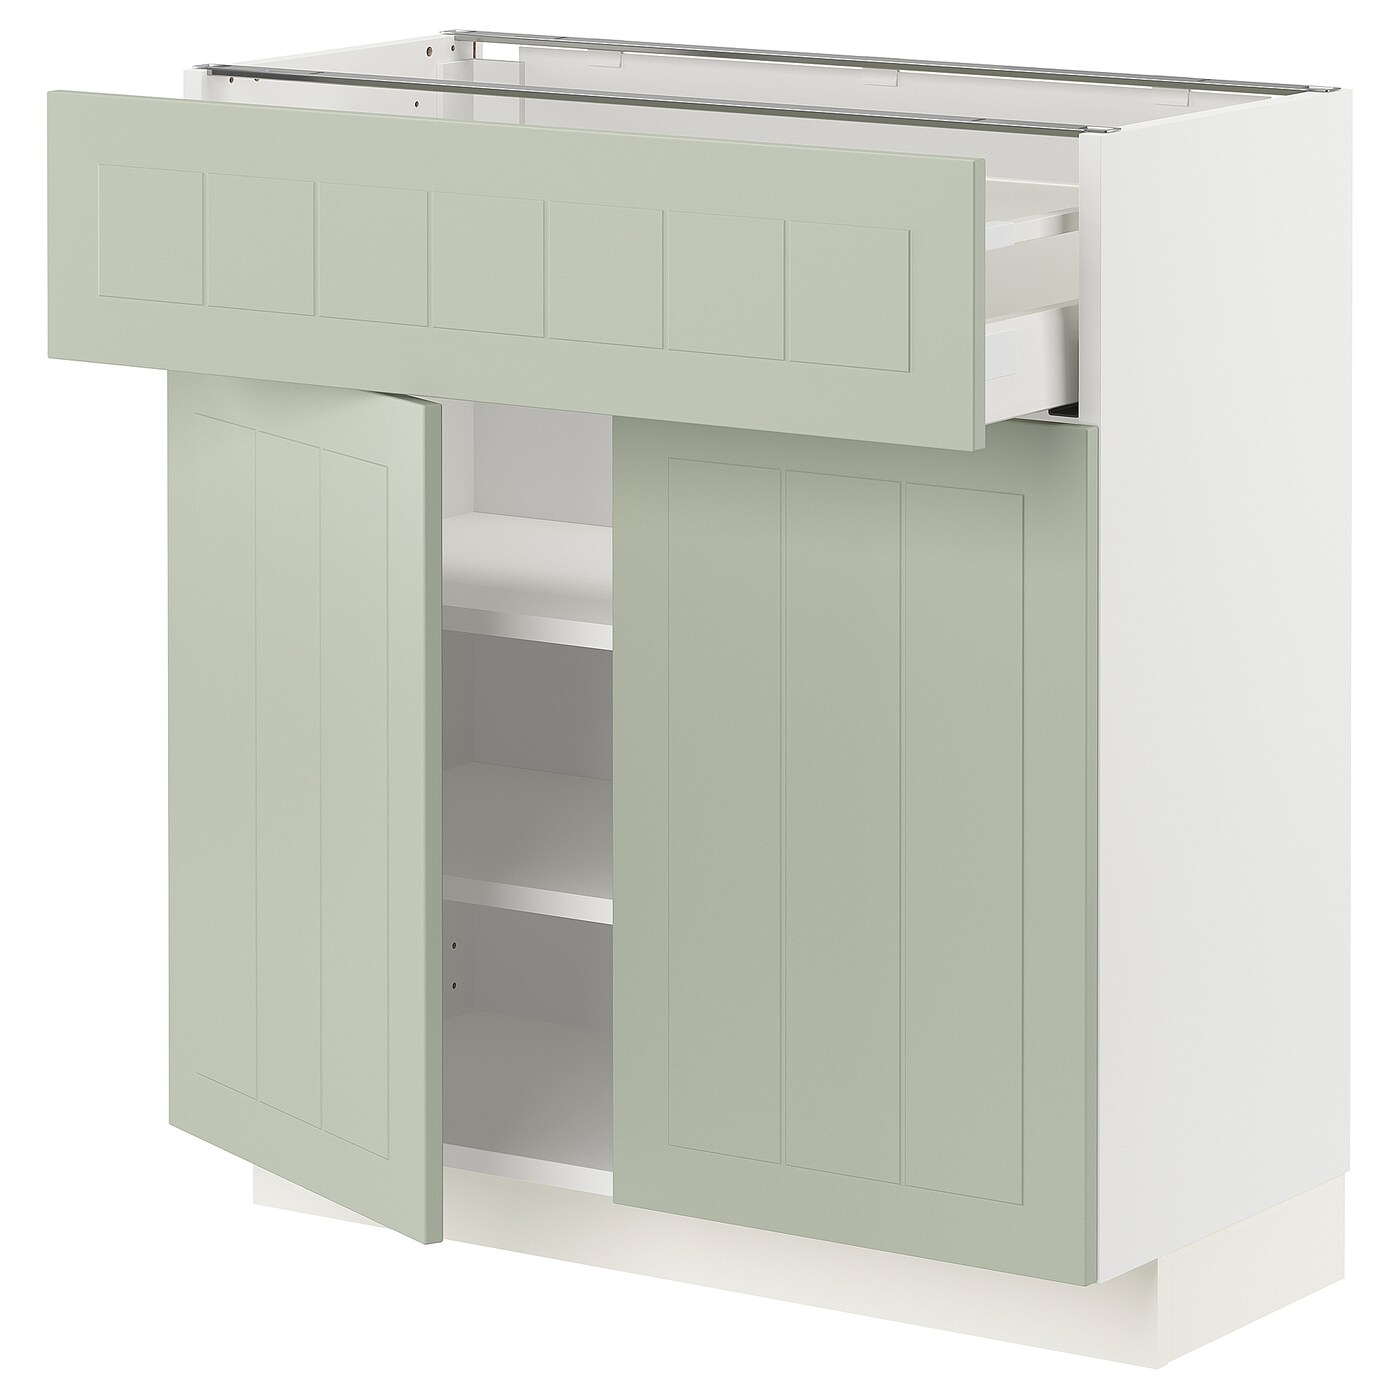 Напольный кухонный шкаф  - IKEA METOD MAXIMERA, 80x37x80см, белый/светло-зеленый, МЕТОД МАКСИМЕРА ИКЕА